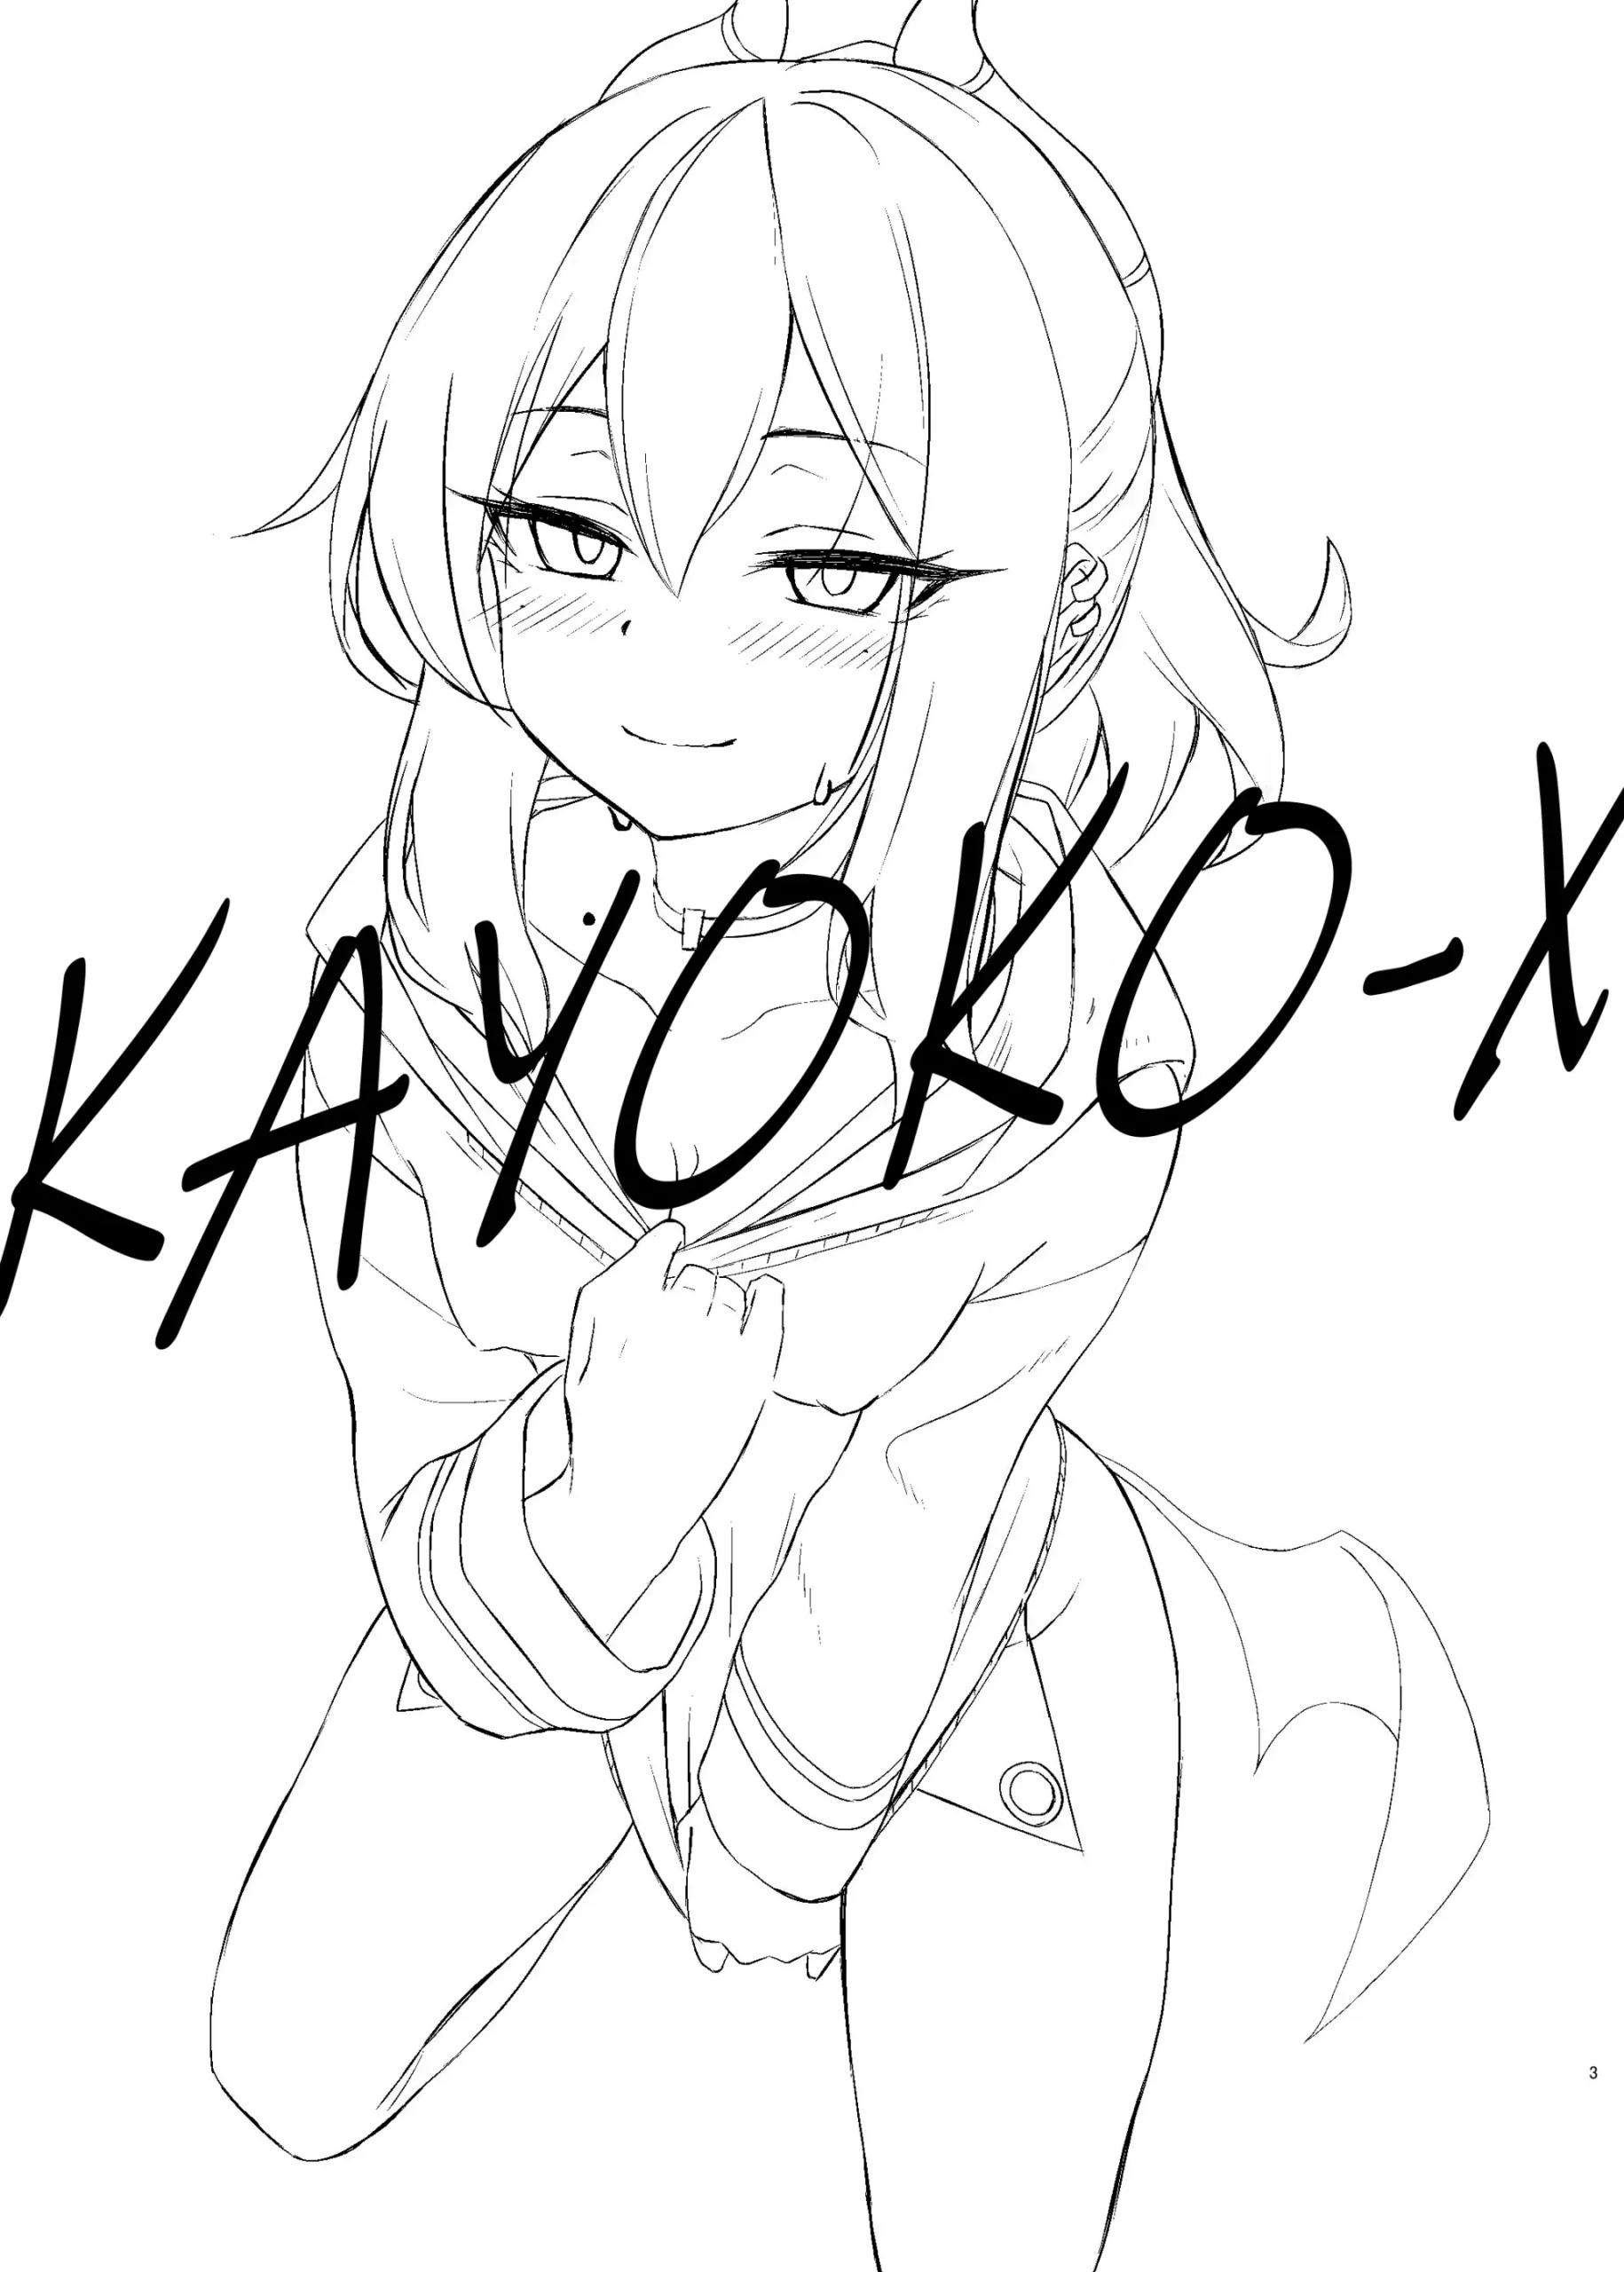 Kayoko-x - Sex with Kayoko - Foto 3